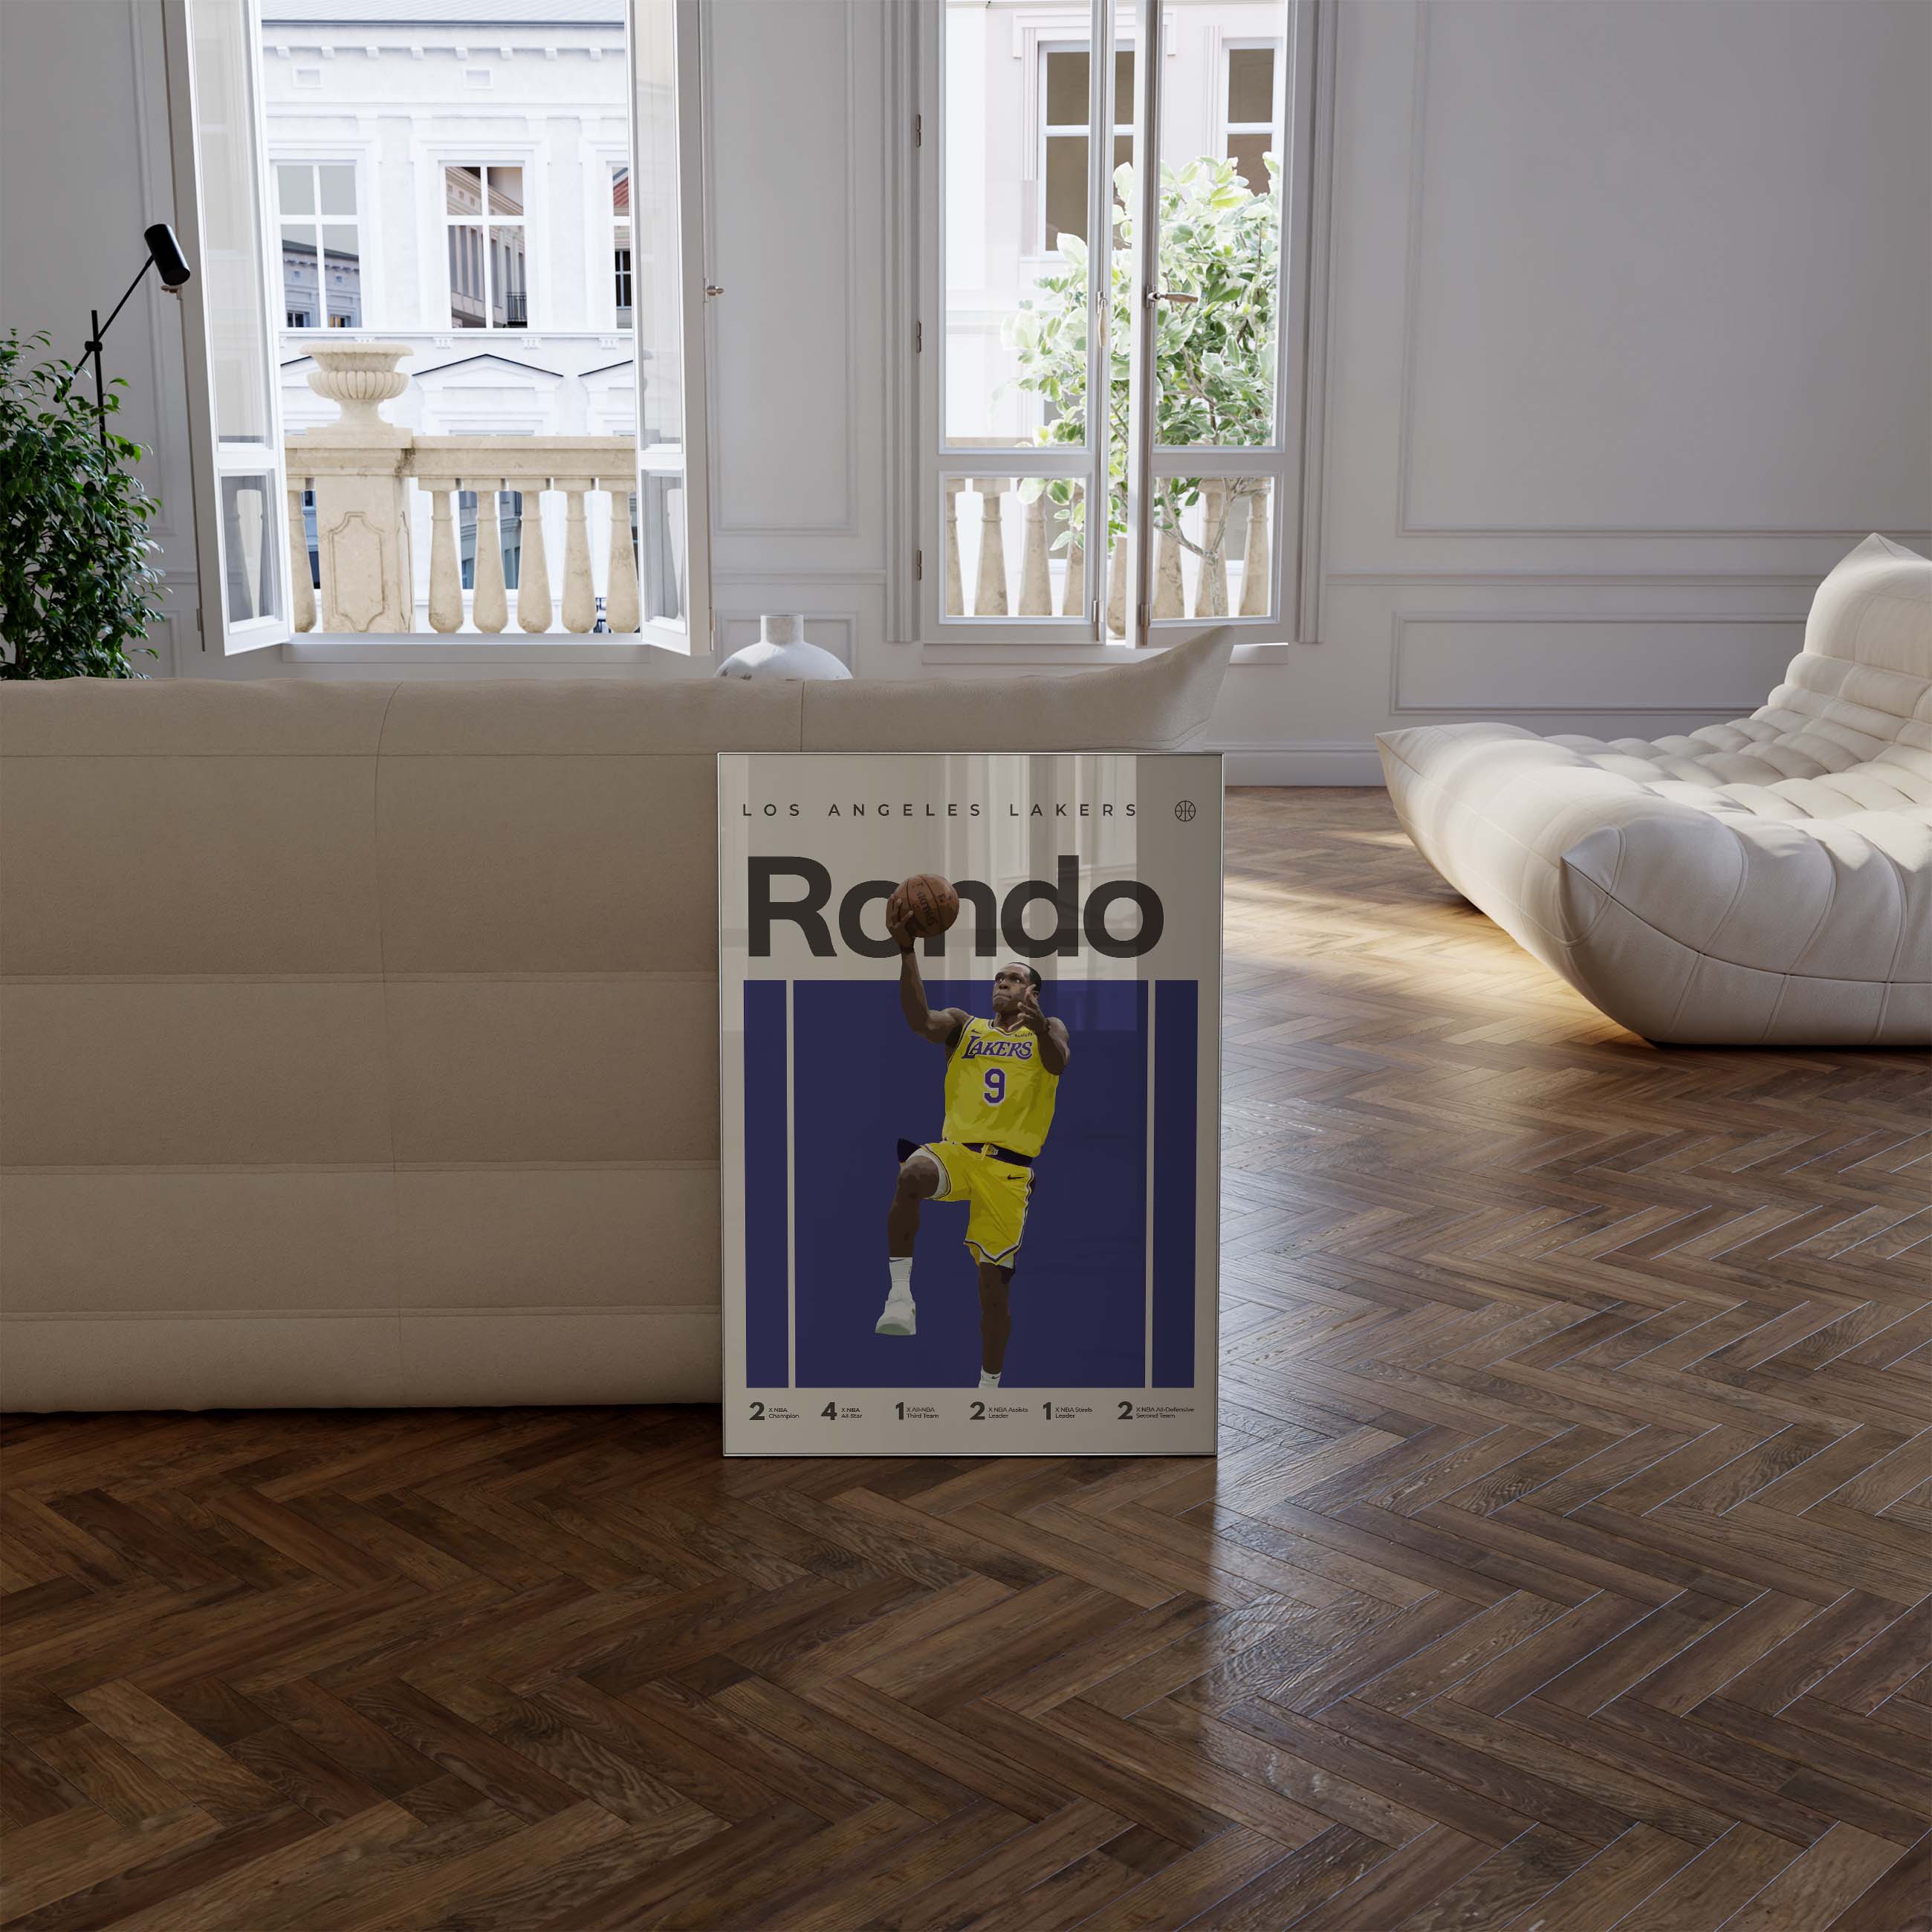 Rajon Rondo poster